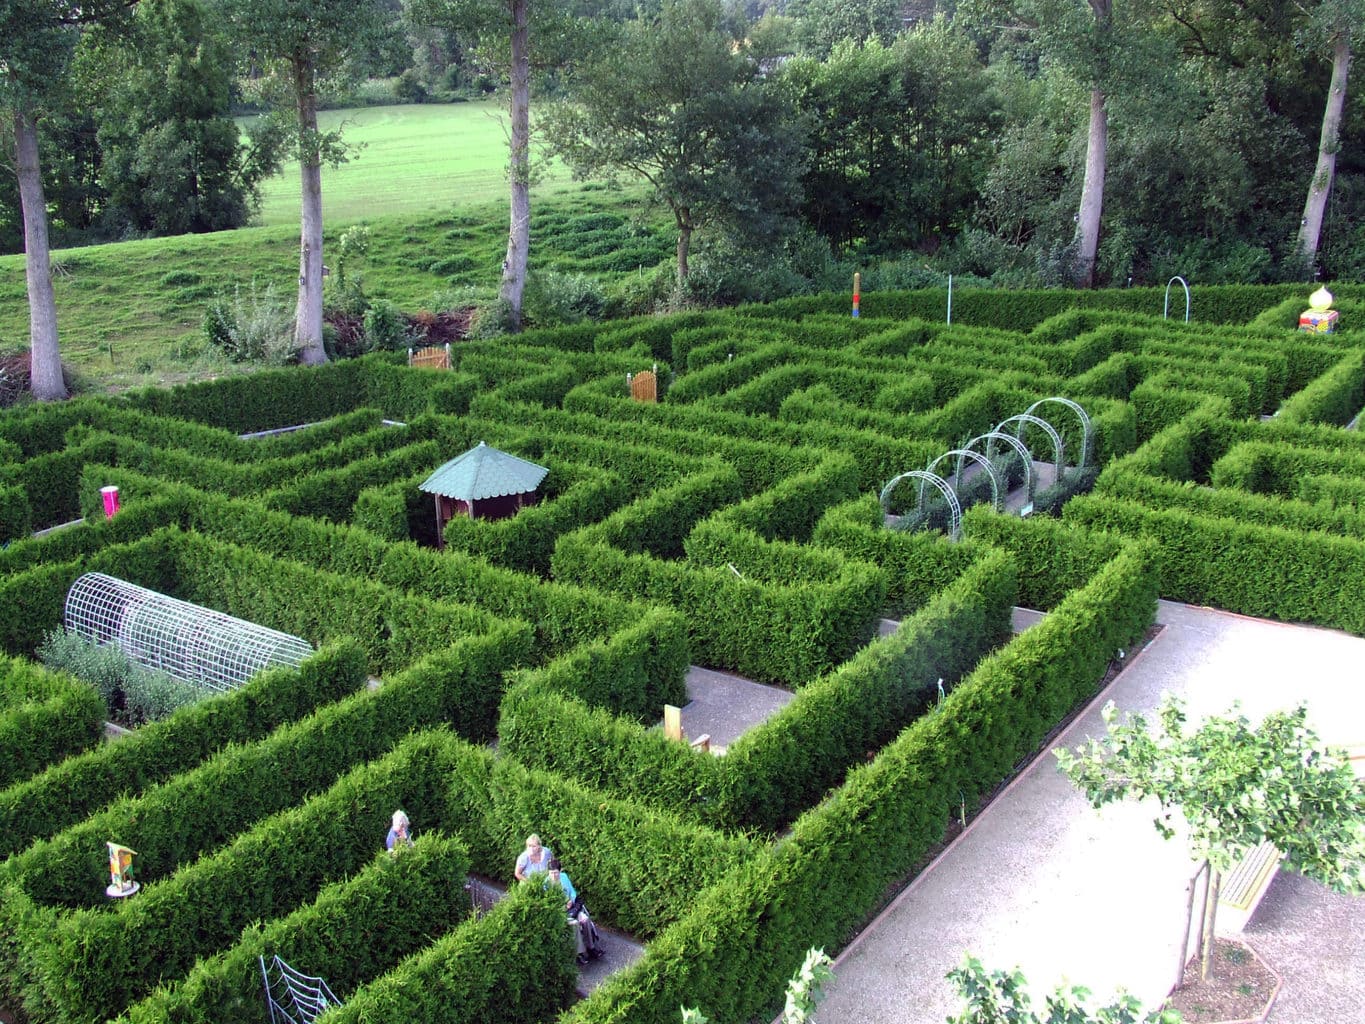 Tuinlabyrinth in het Duitse Emsland zes redenen voor een gezinsvakantie in het Emsland